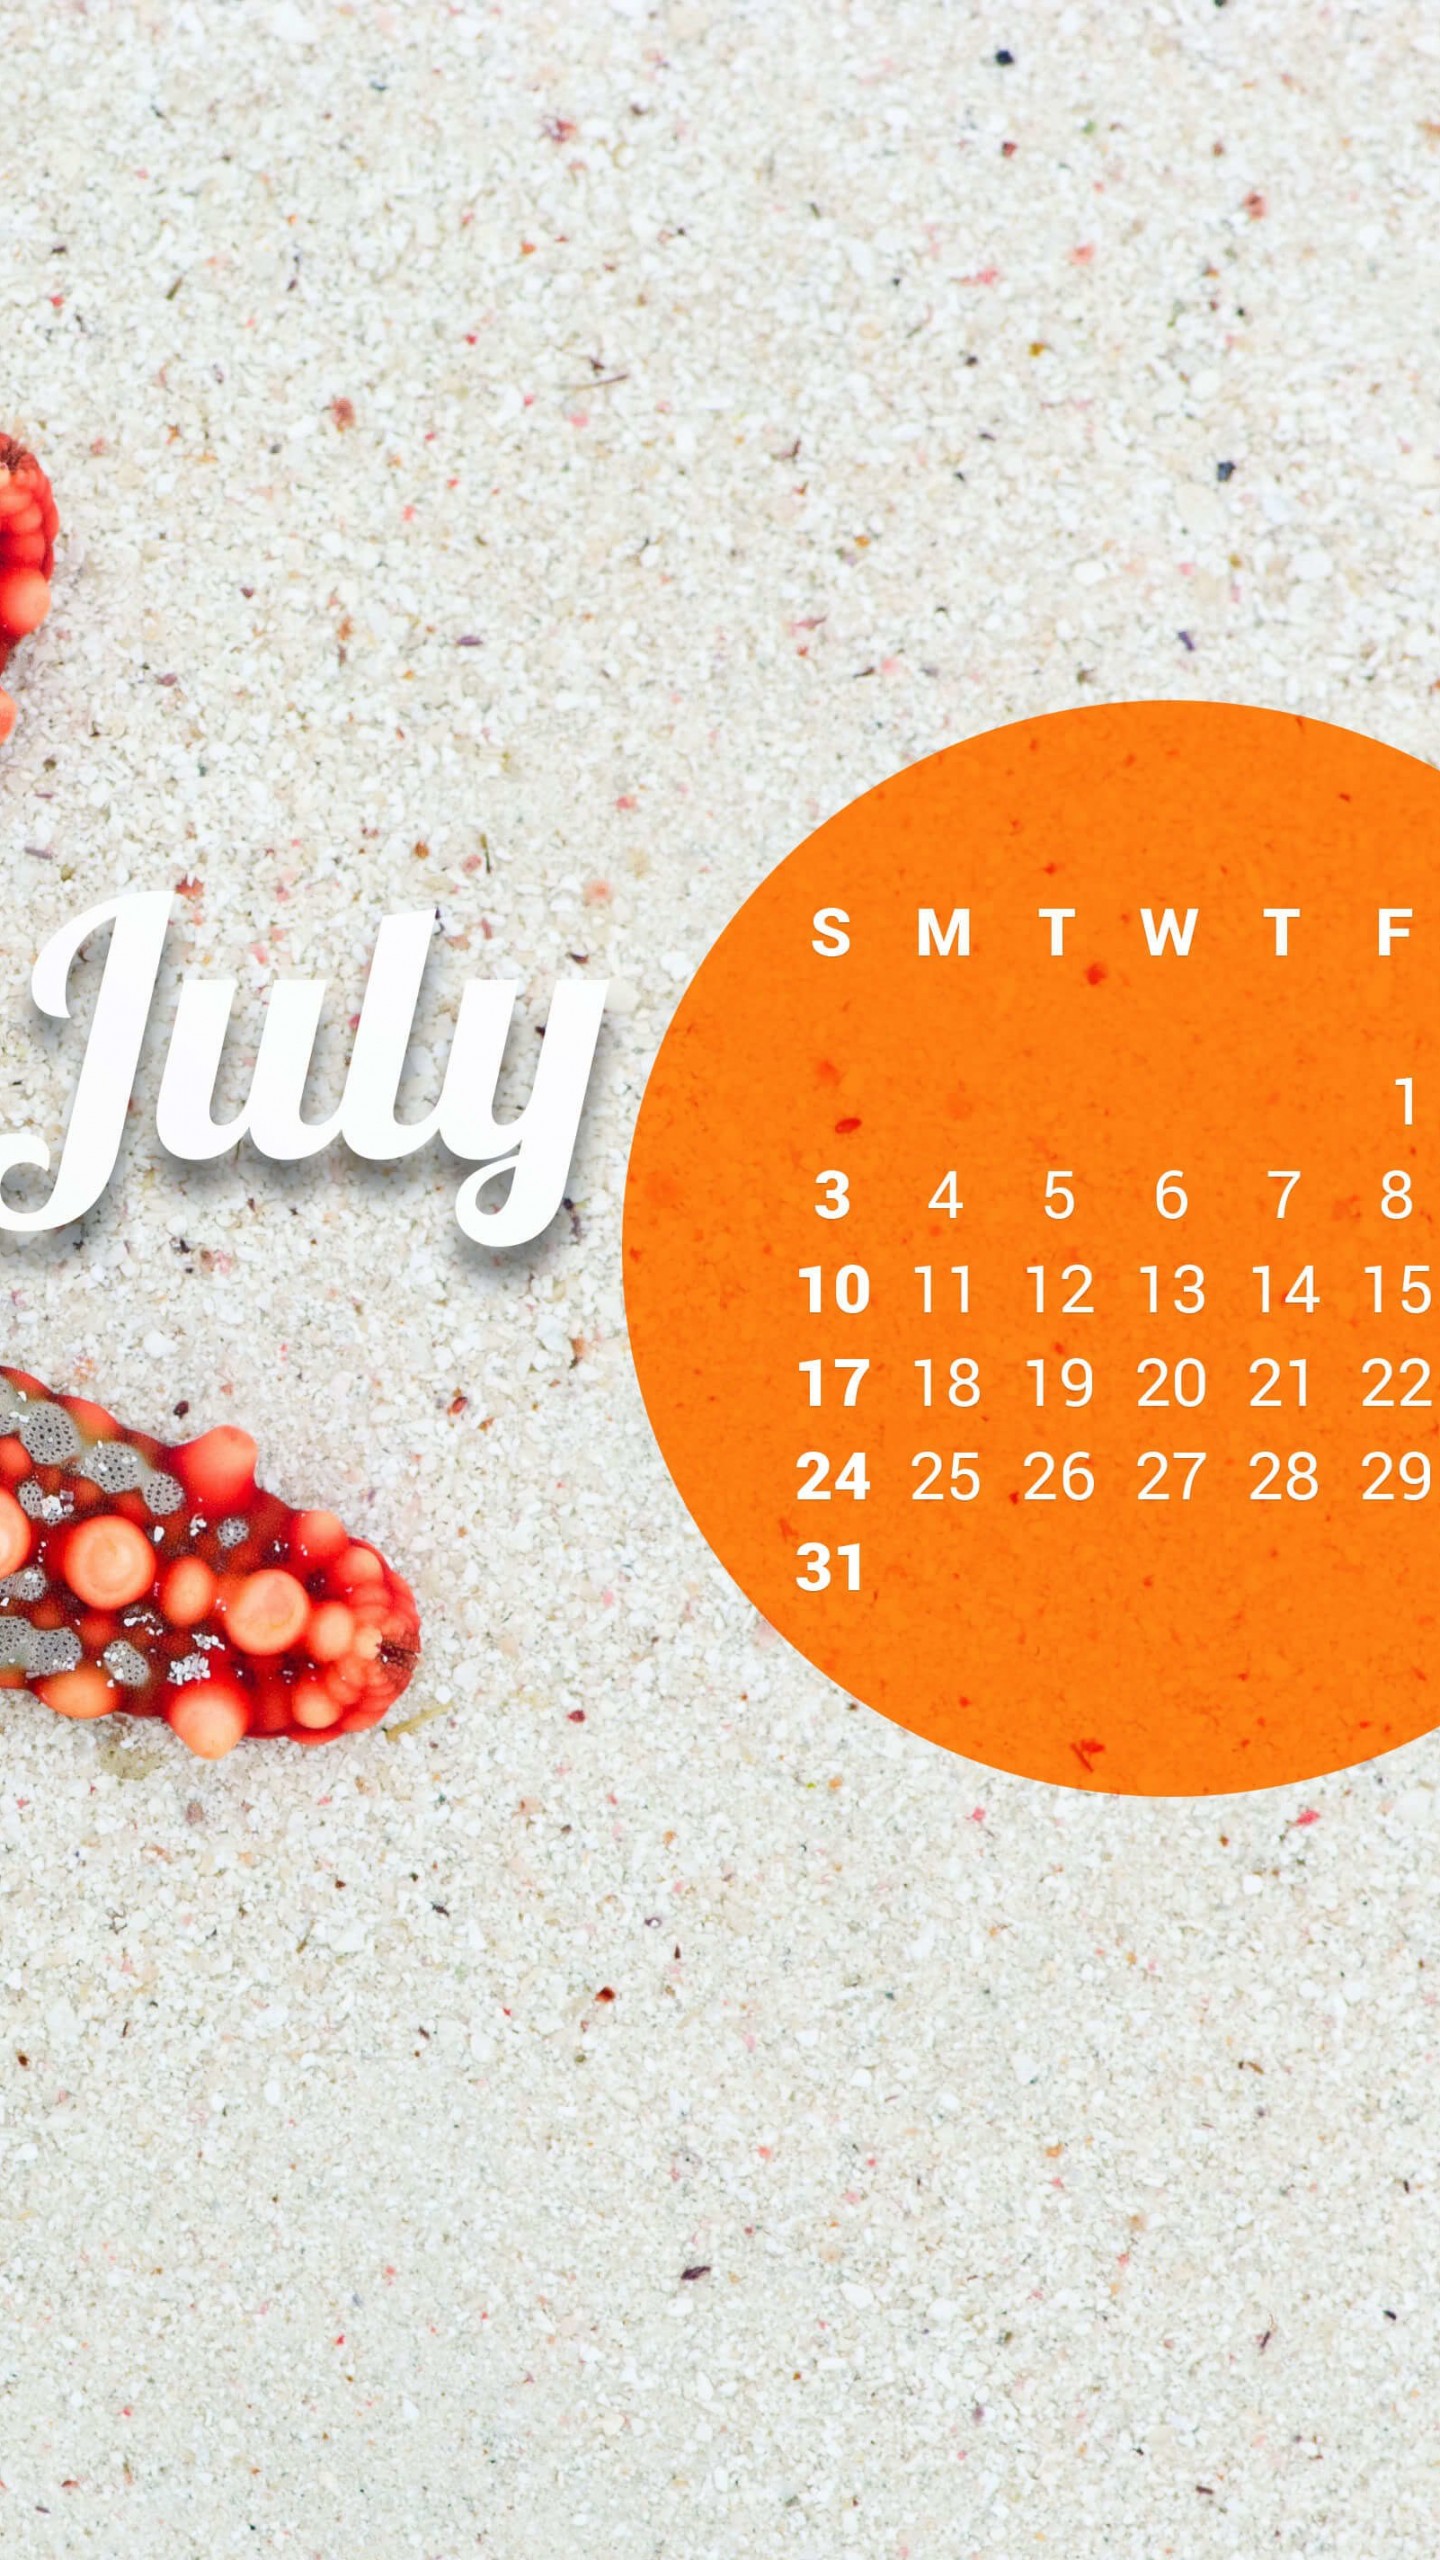 July 2016 Calendar Wallpaper for Google Nexus 6